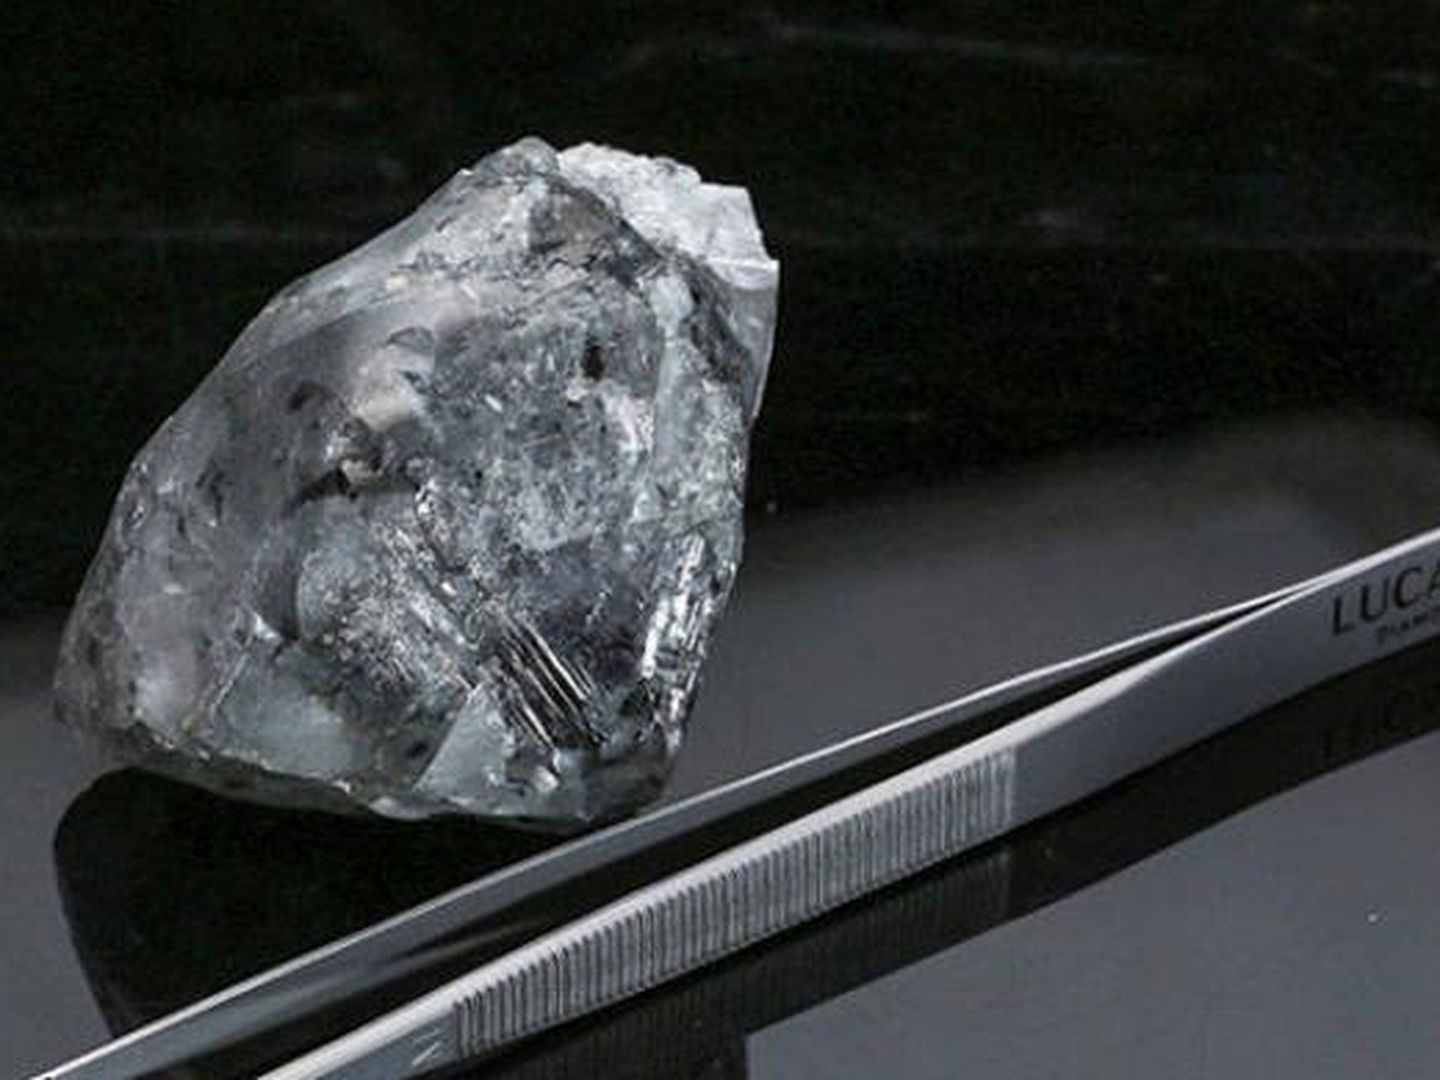 Los científicos de la universidad de Delft dicen haber creado un cristal del tiempo dentro de un diamante